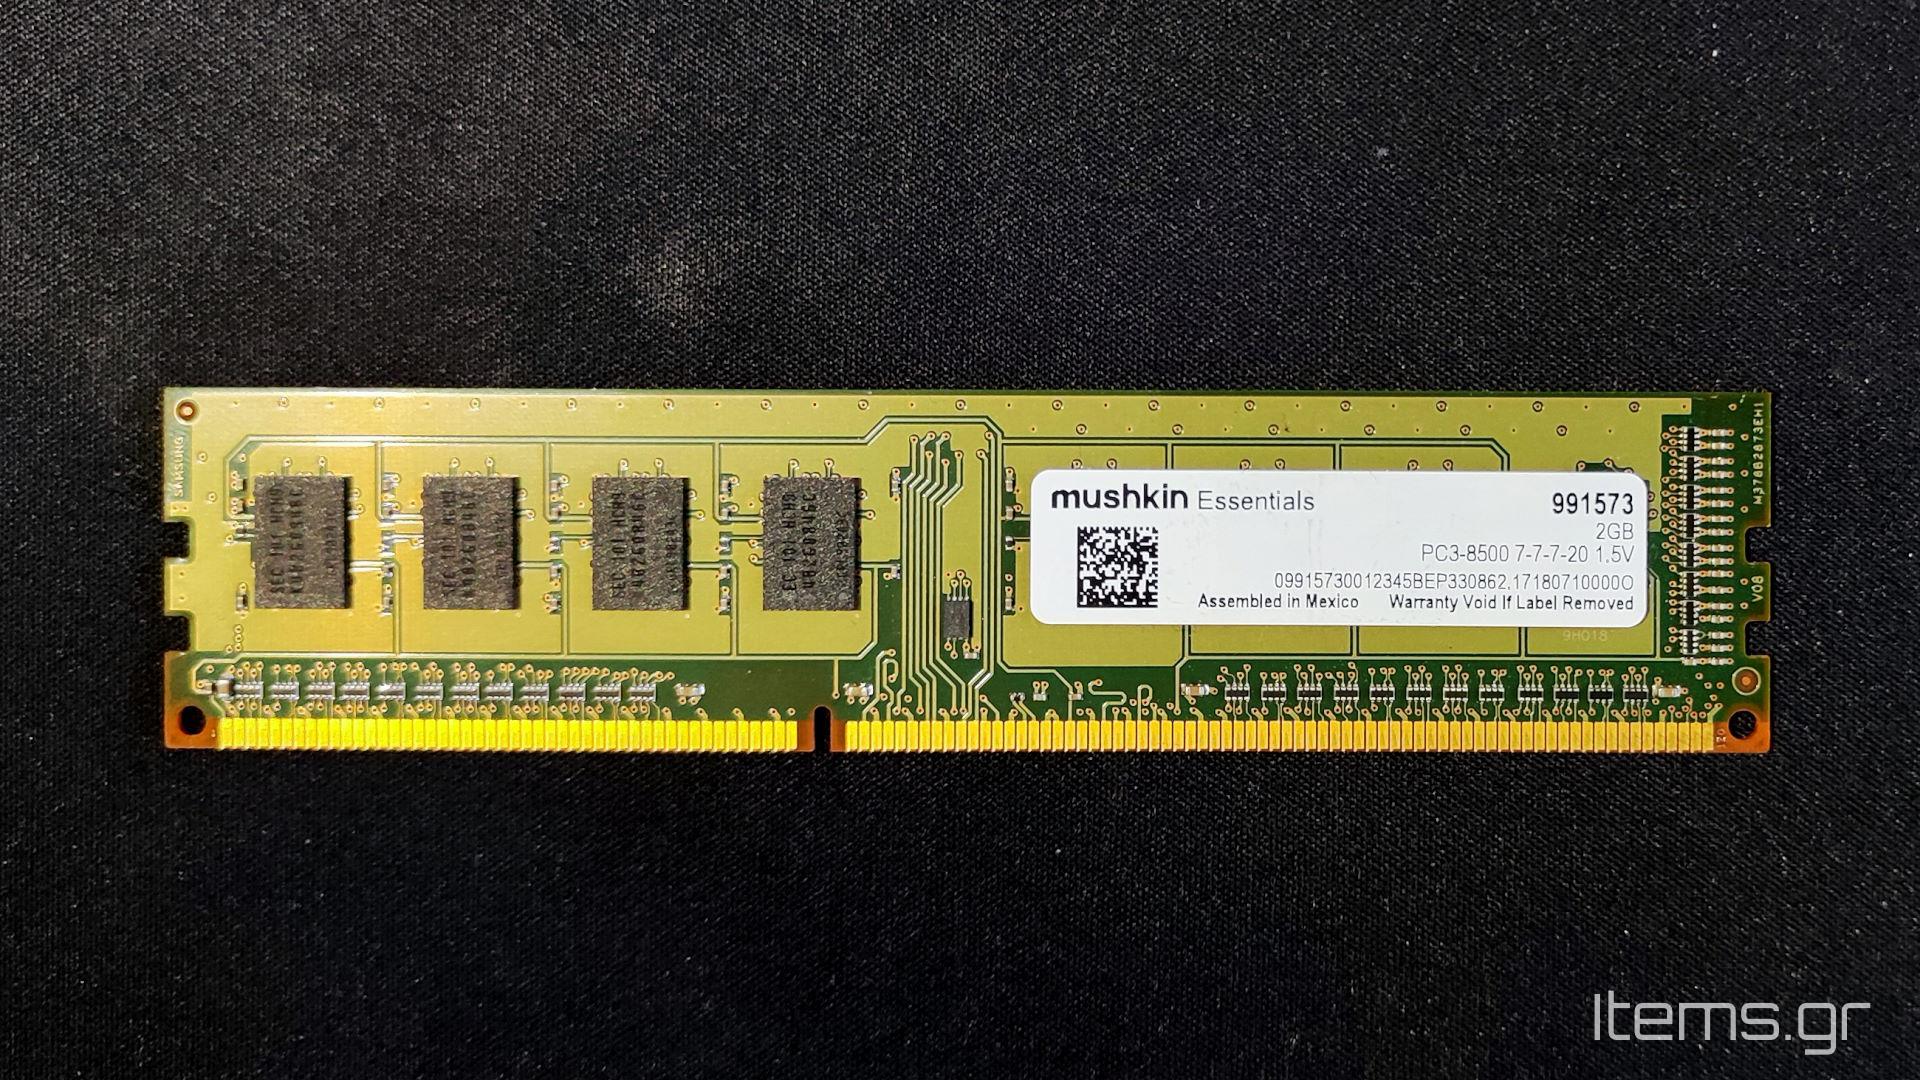 Mushkin-Essentials-2GB-DDR3-1066MHz-CL7-D-01